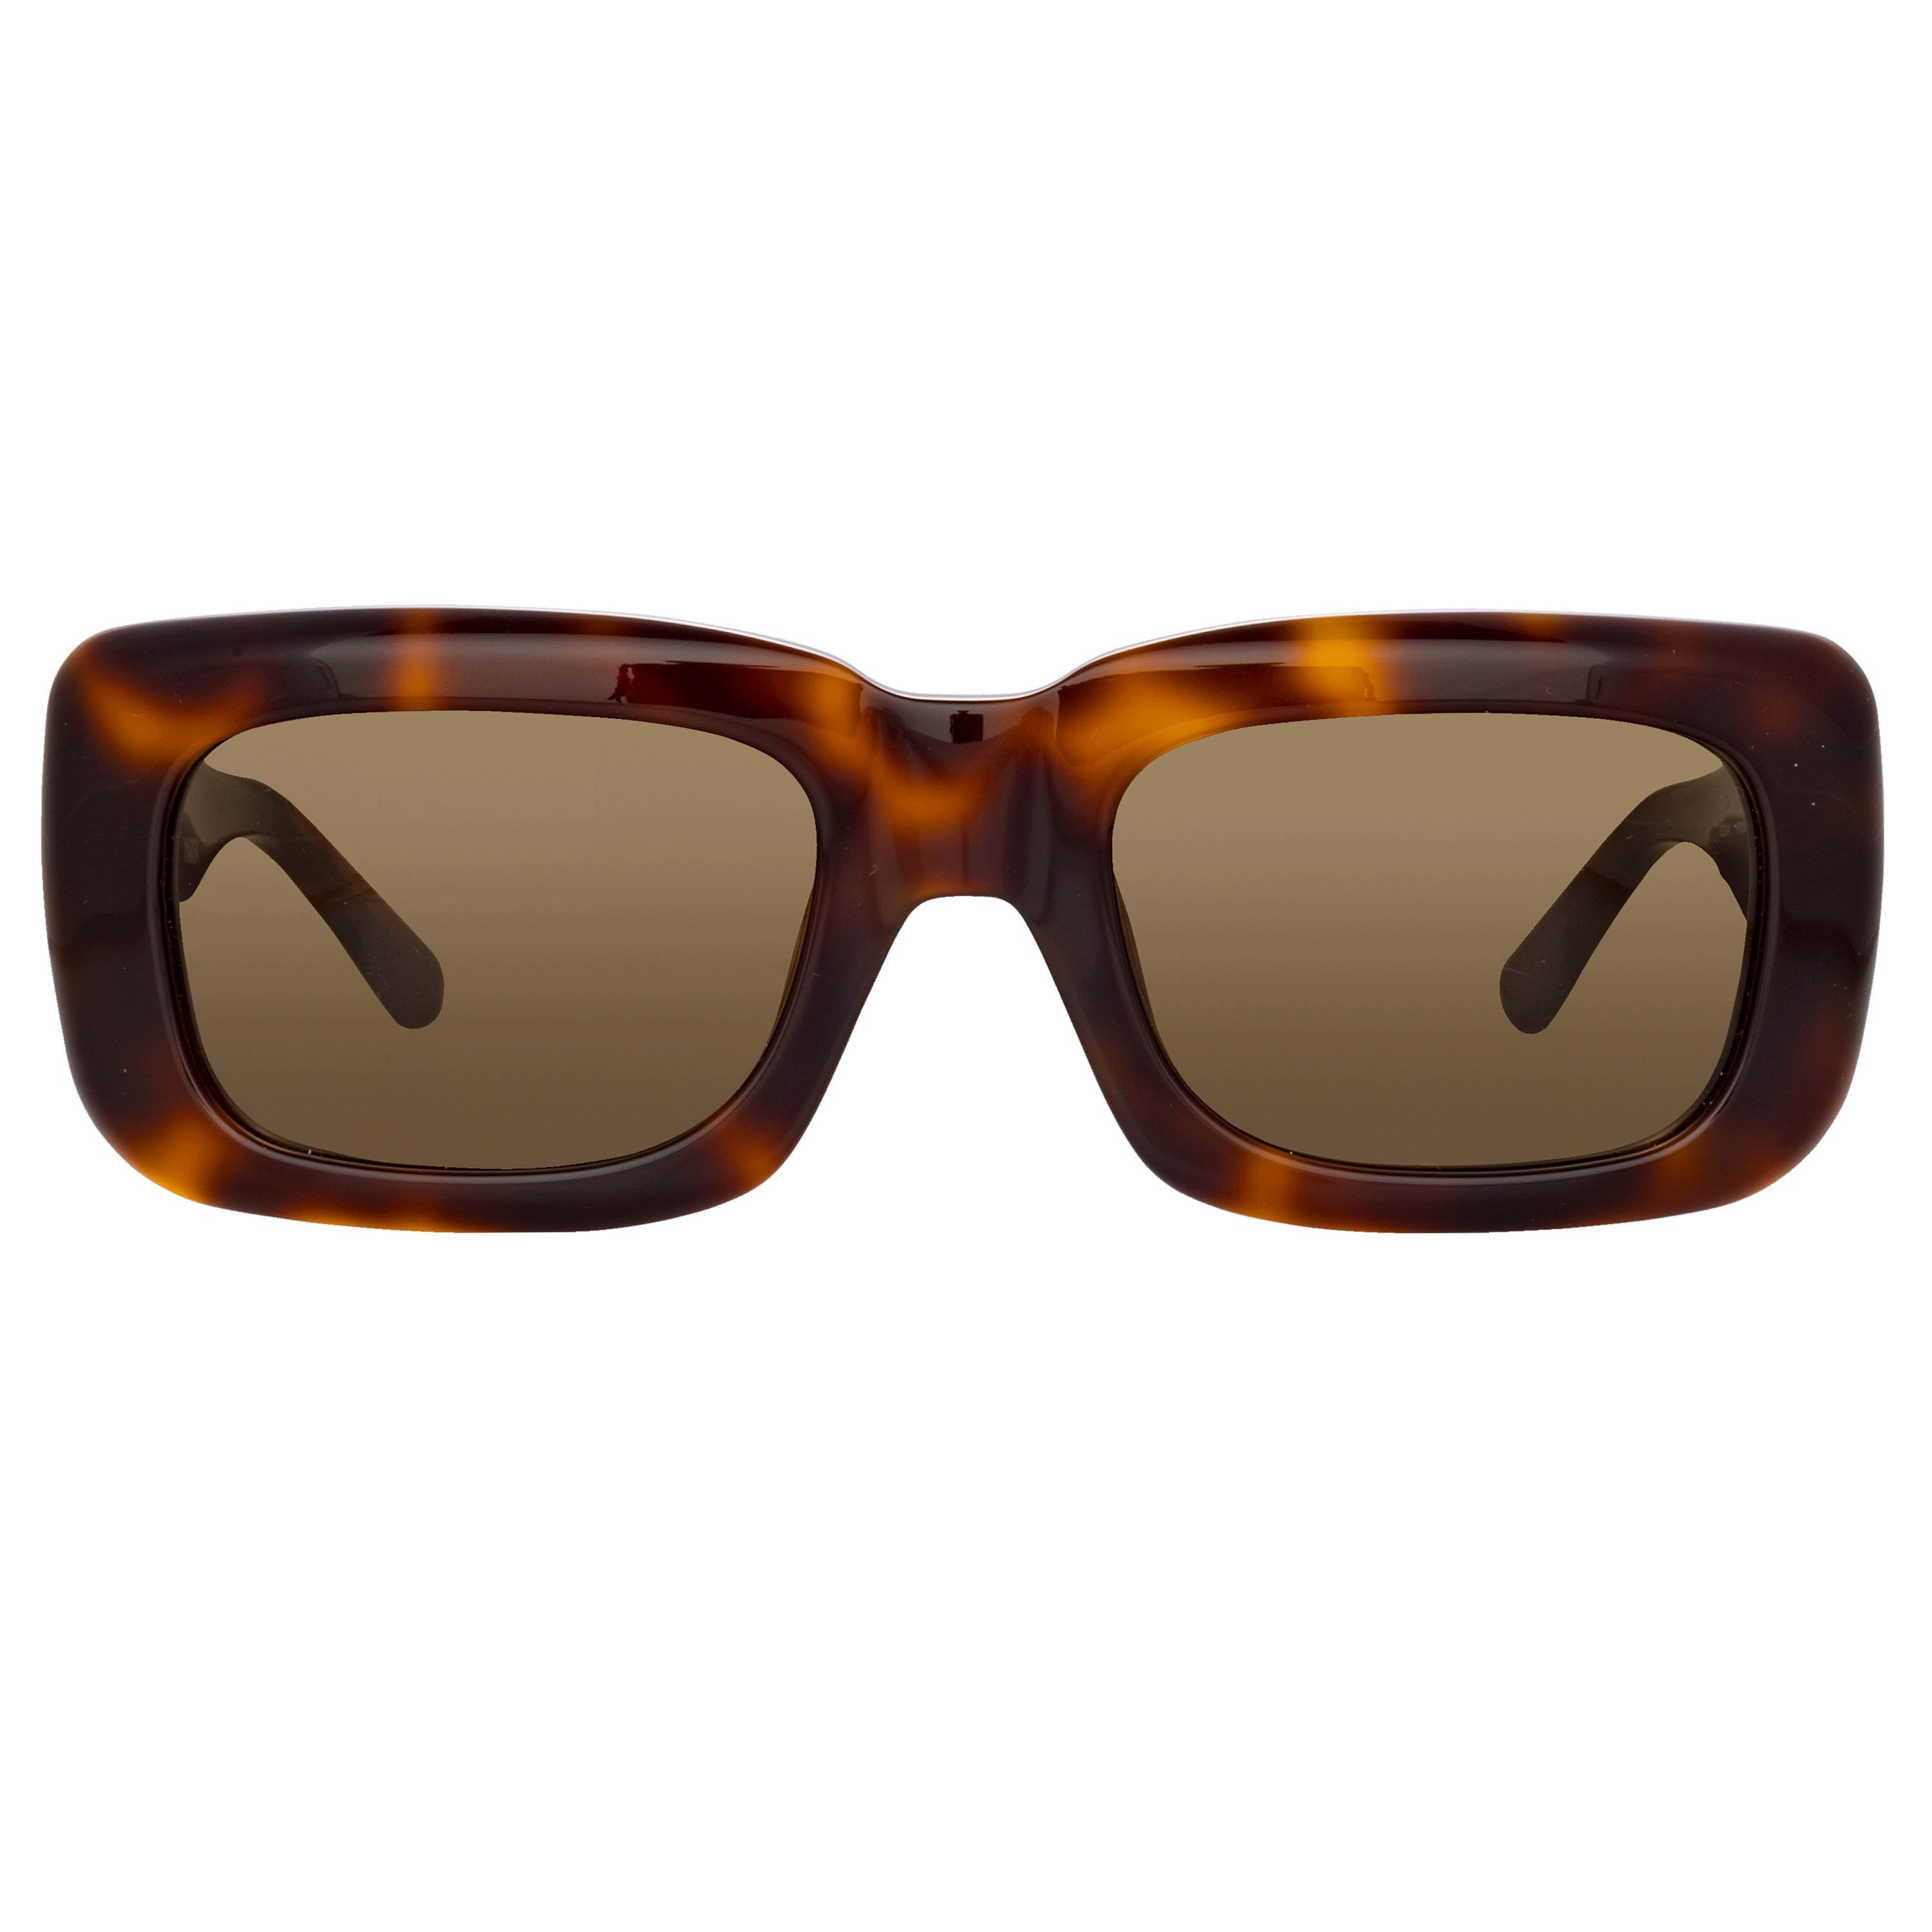 Color_ATTICO3C10SUN - The Attico Marfa Rectangular Sunglasses in Tortoiseshell and Brown